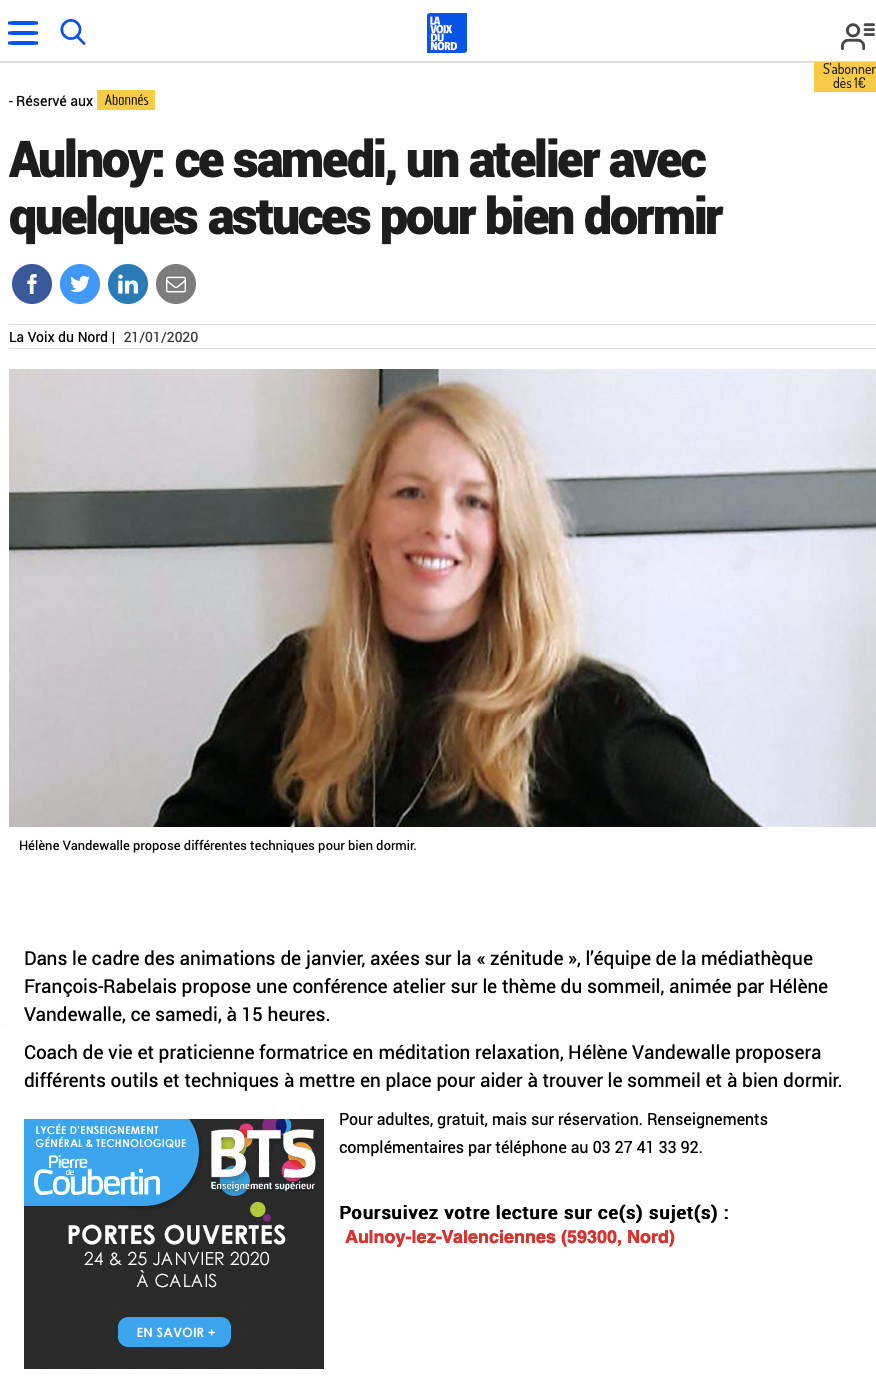 Hélène Vandewalle, Coach de Vie certifiée, article de presse La Voix du Nord pour une conférence